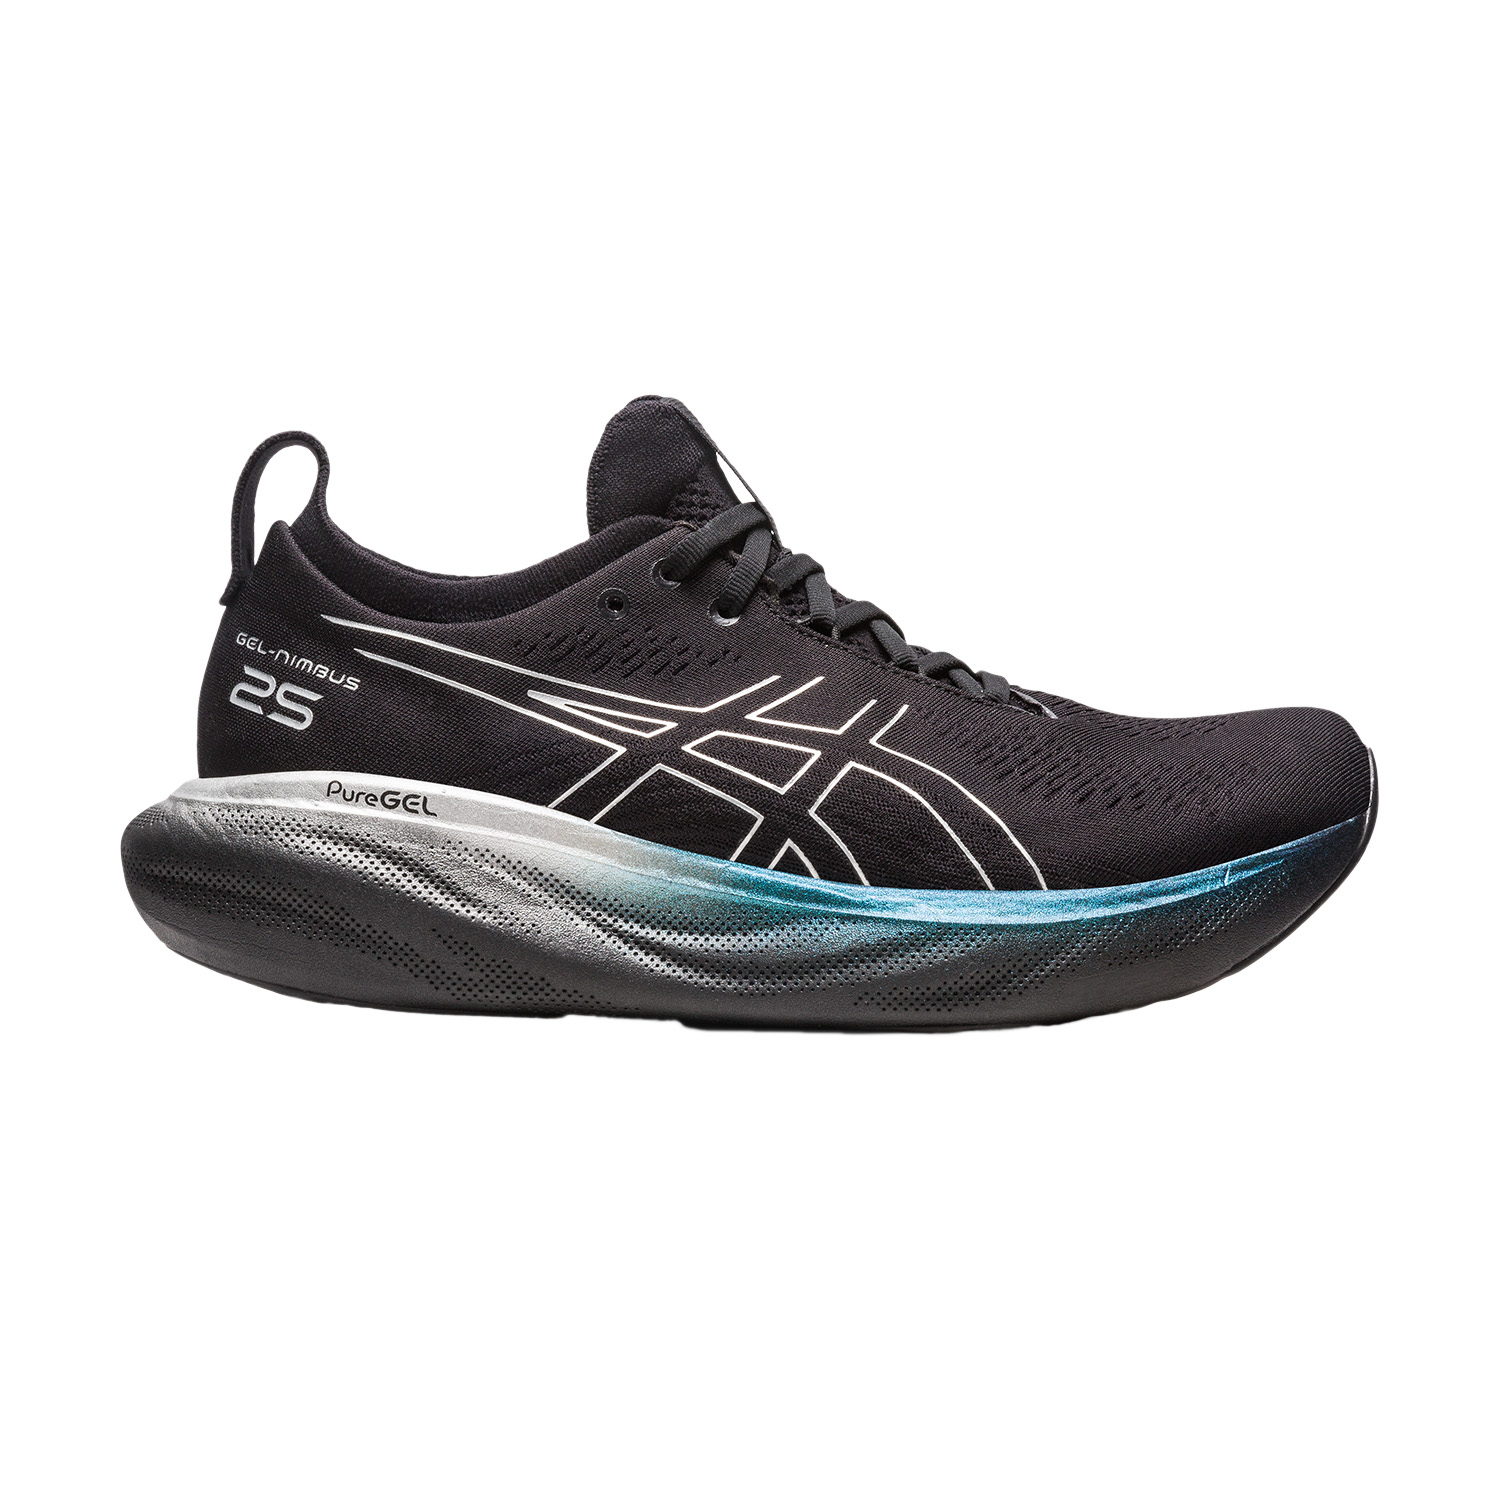 Asics Gel Nimbus 25 Platinum Men's Running Shoes - Black